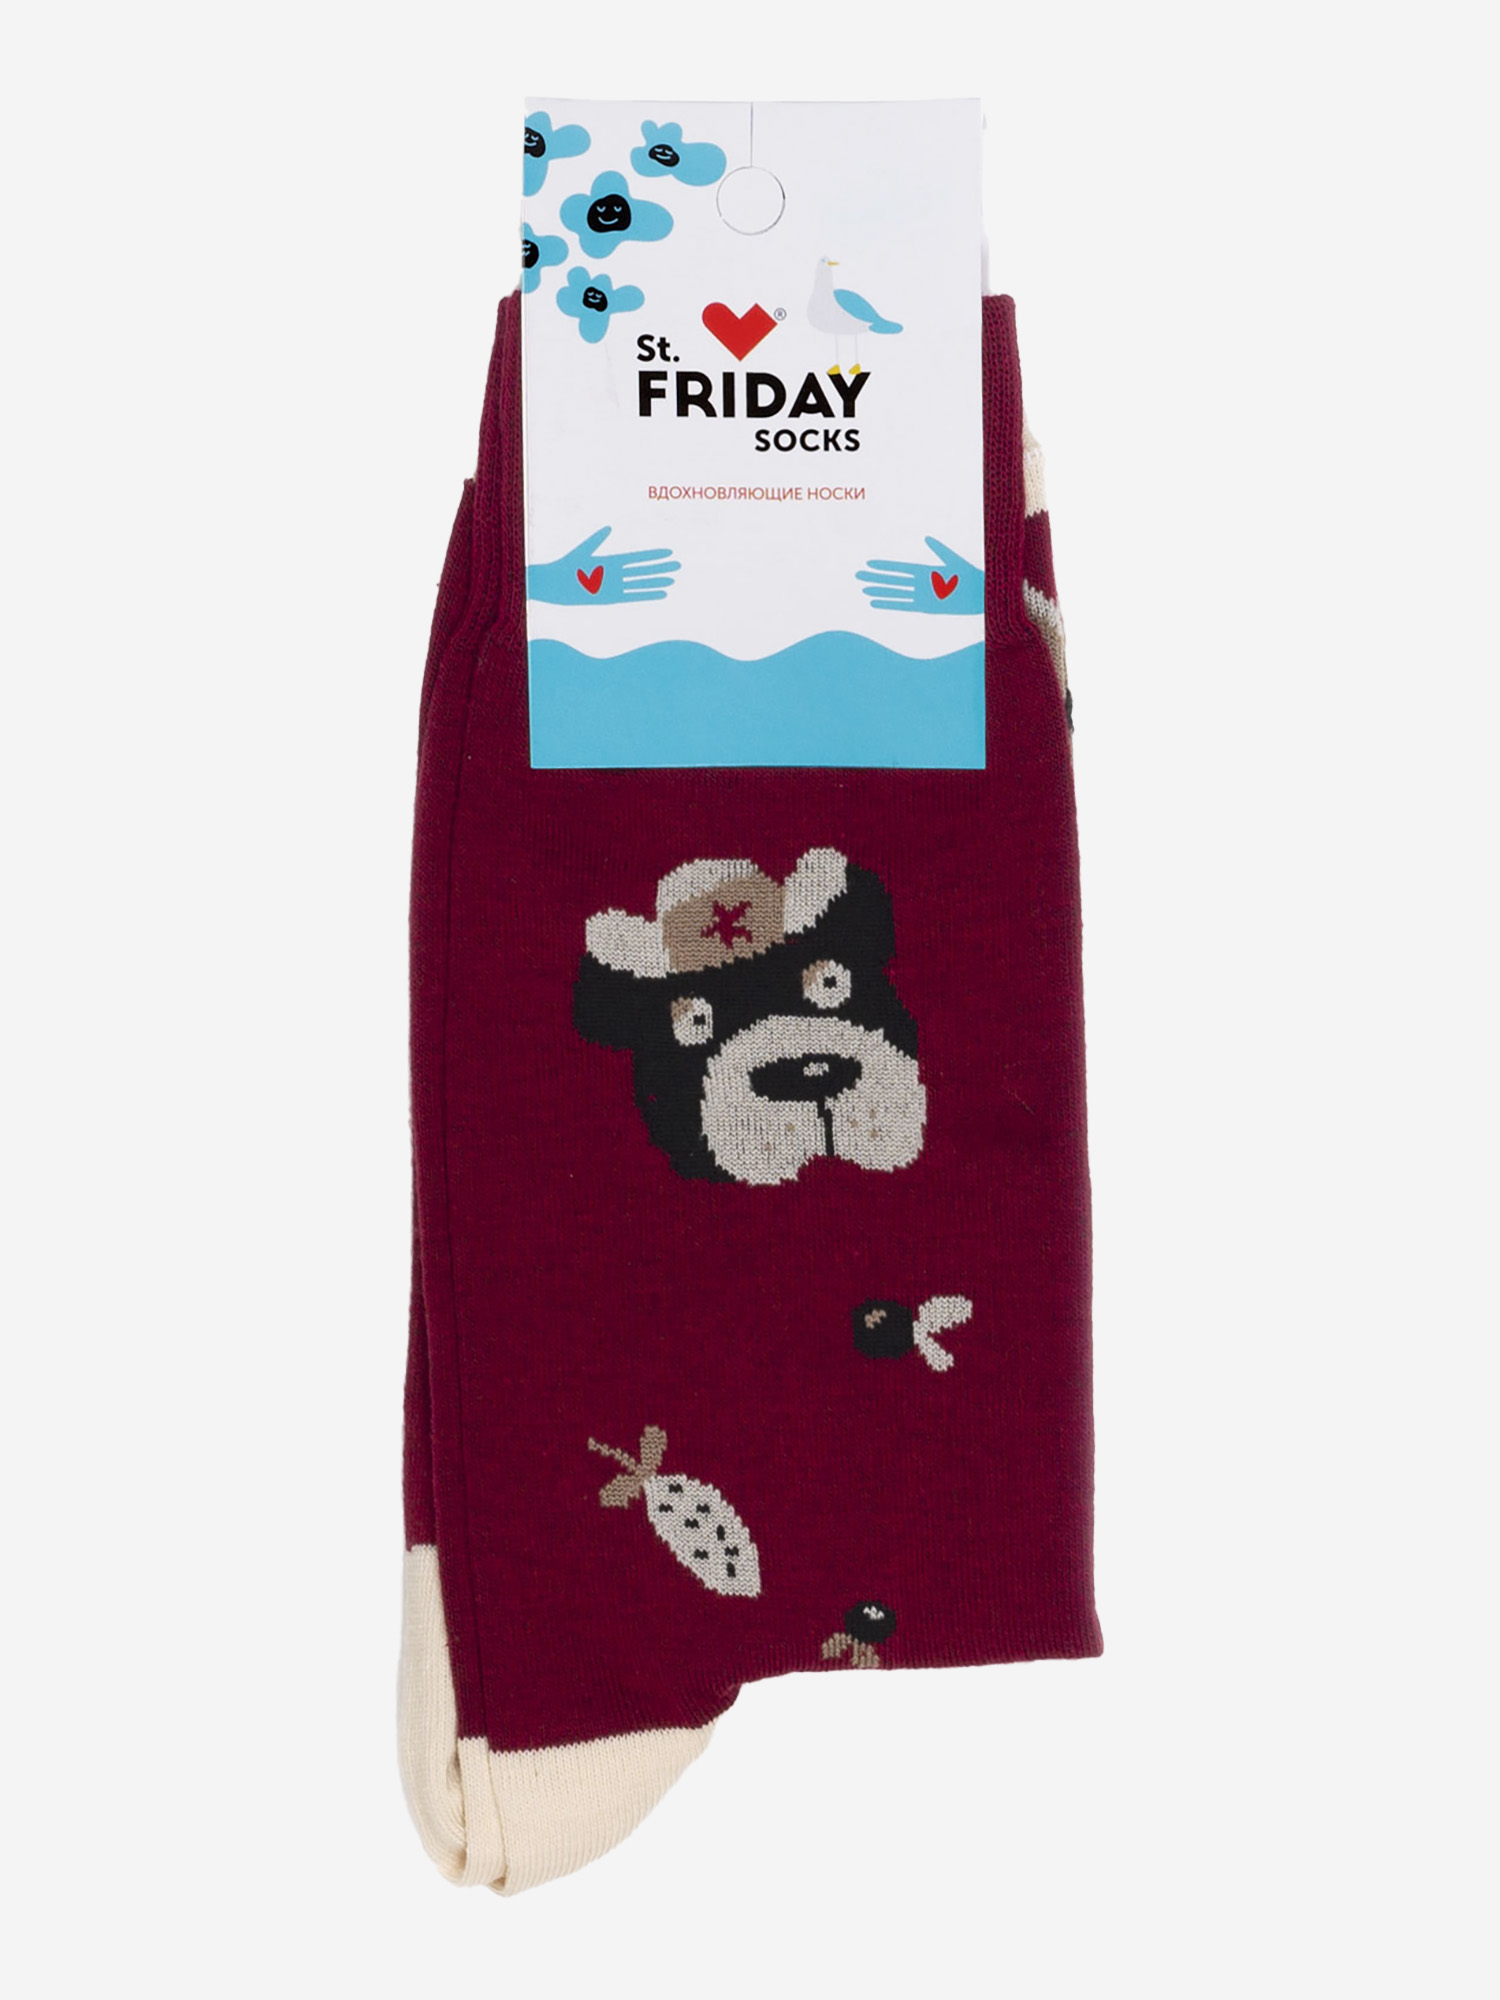 Носки с рисунками St.Friday Socks - Миша в шапке, Красный